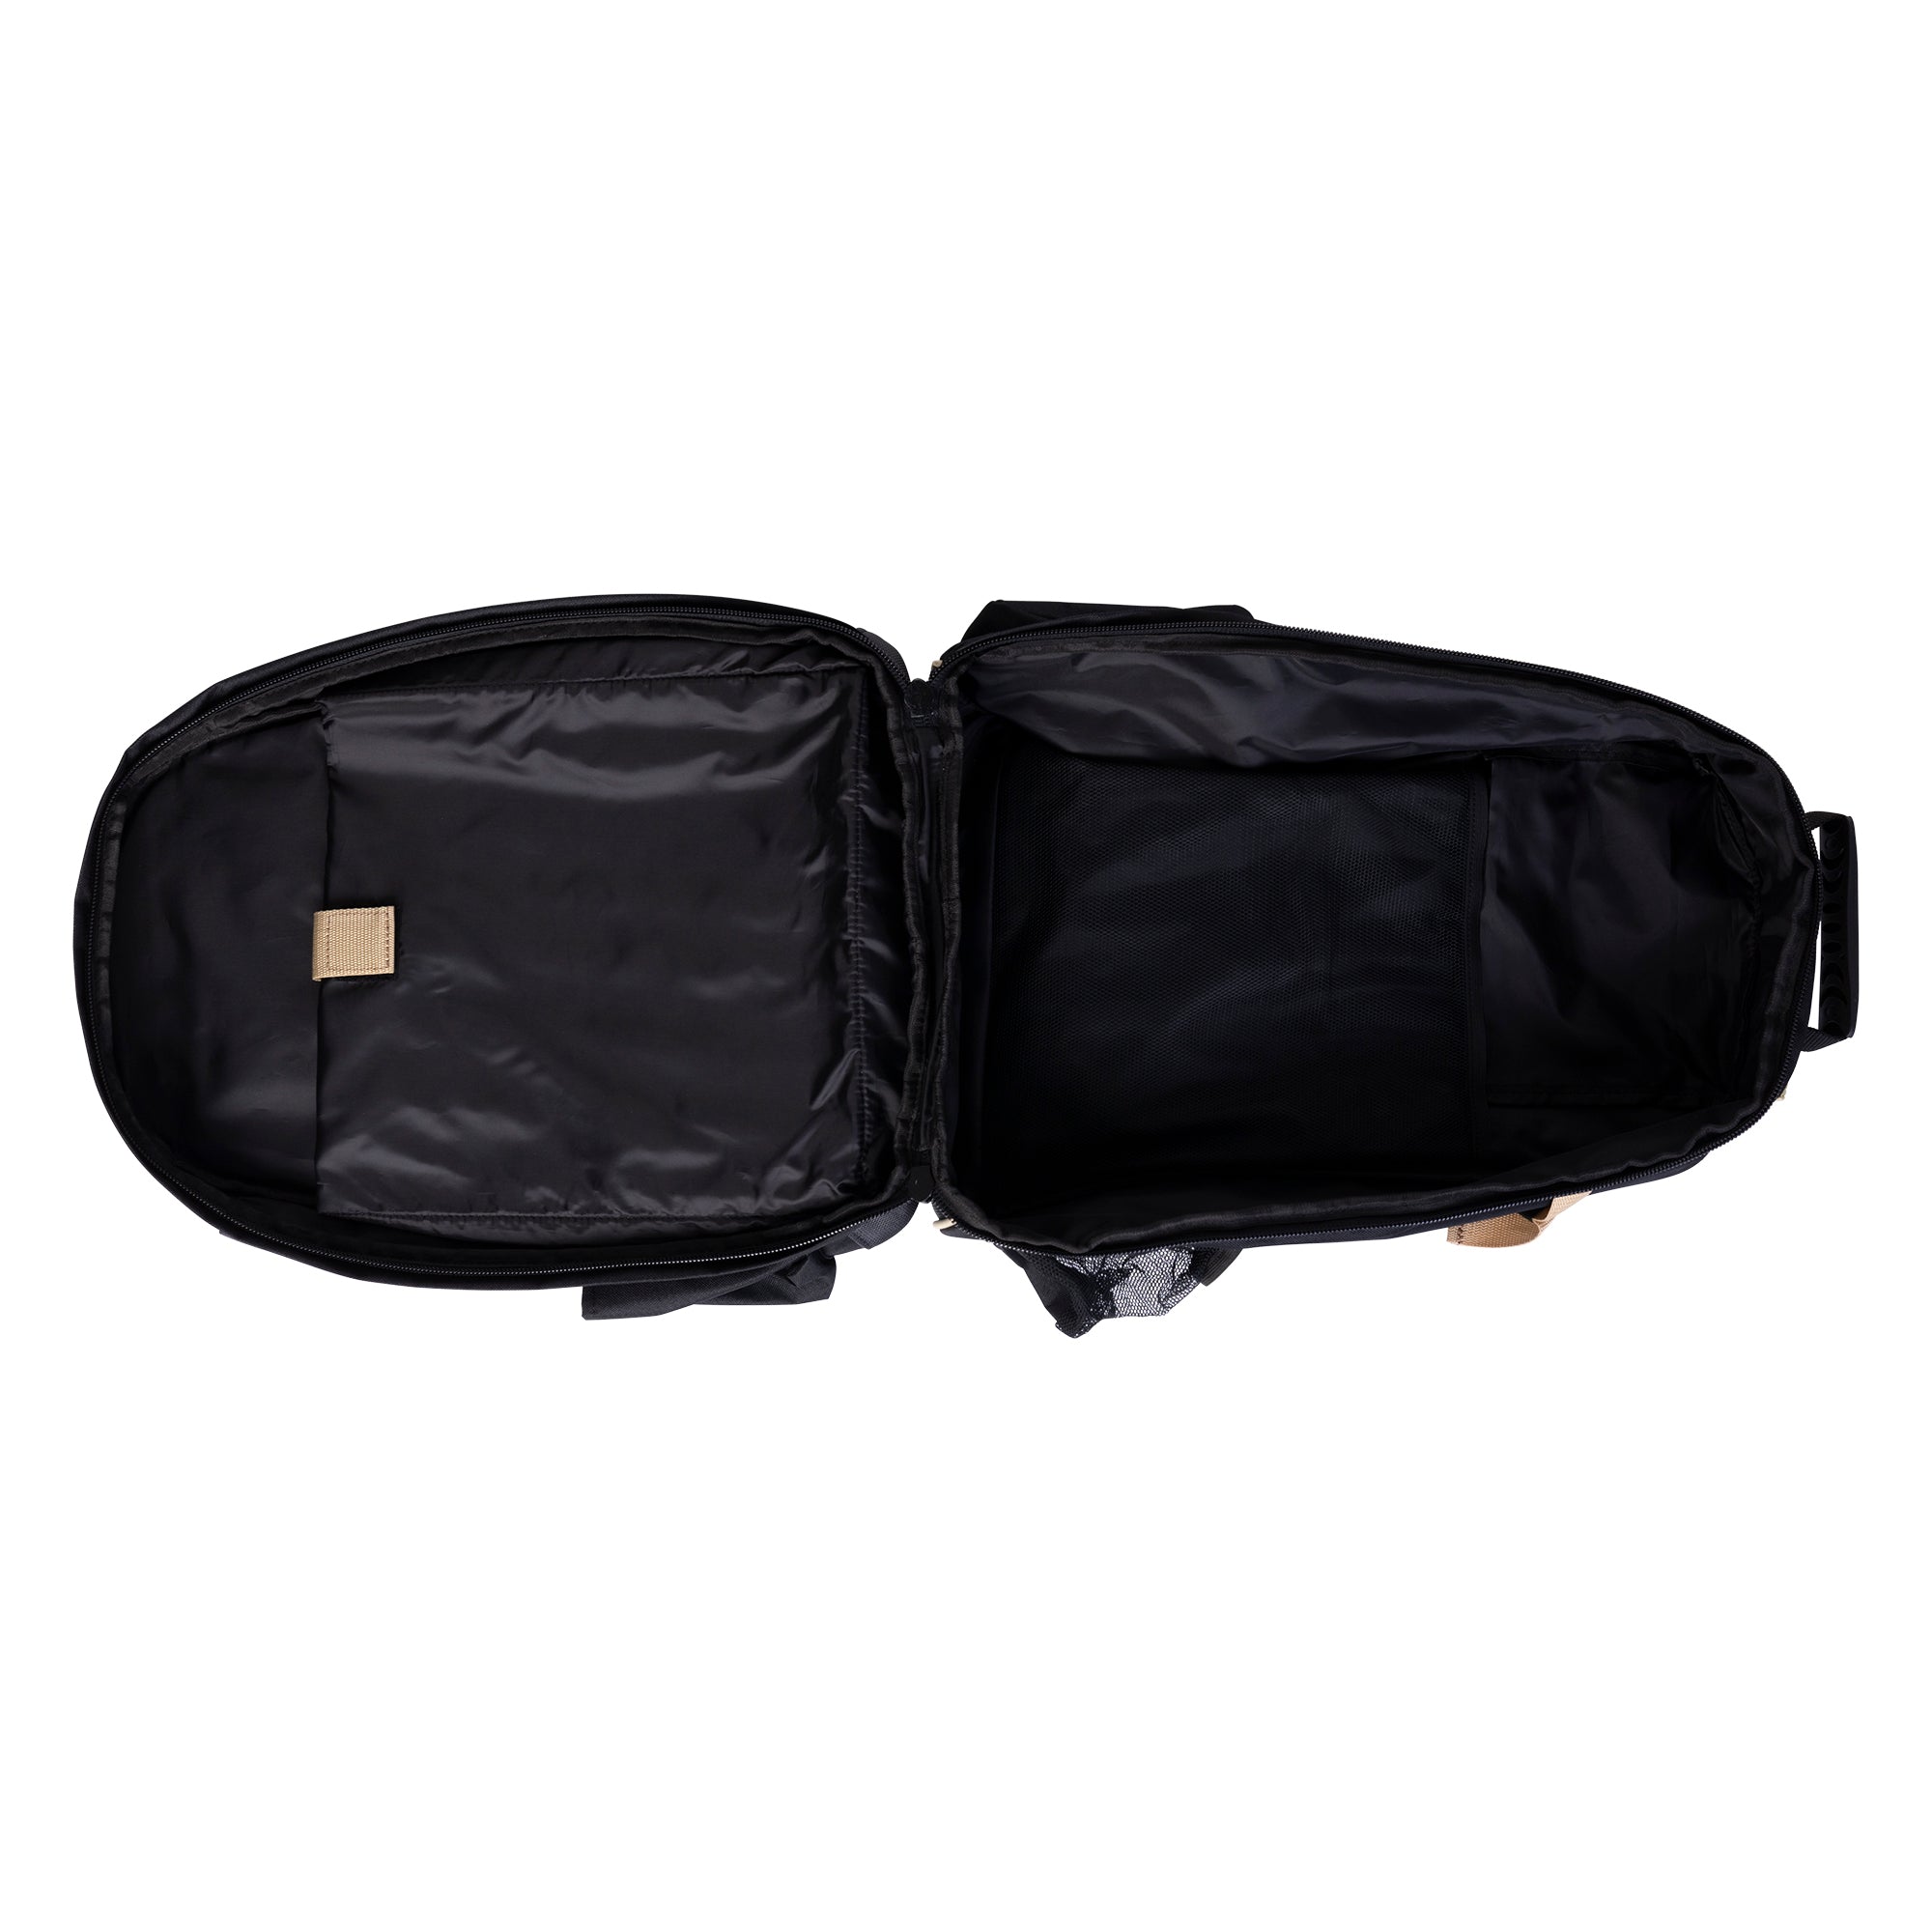 Huntley Equestrian Deluxe Travel Garment Bag